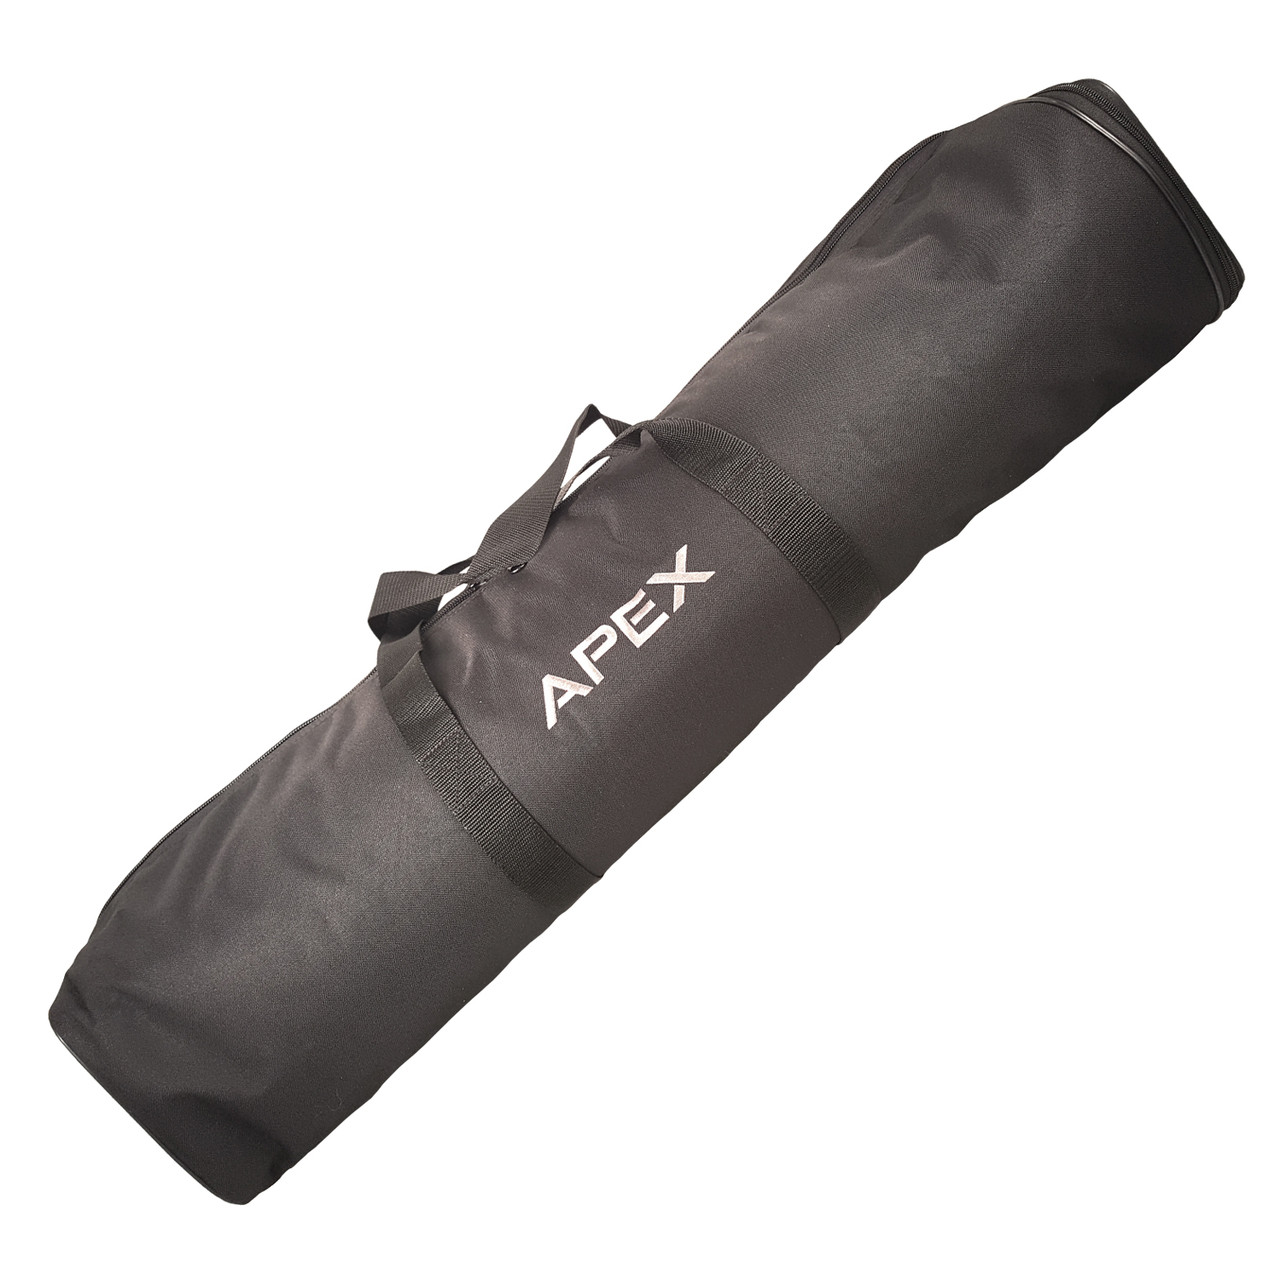 ANBERNIC protective bag for RG ARC-D/RG ARC-S